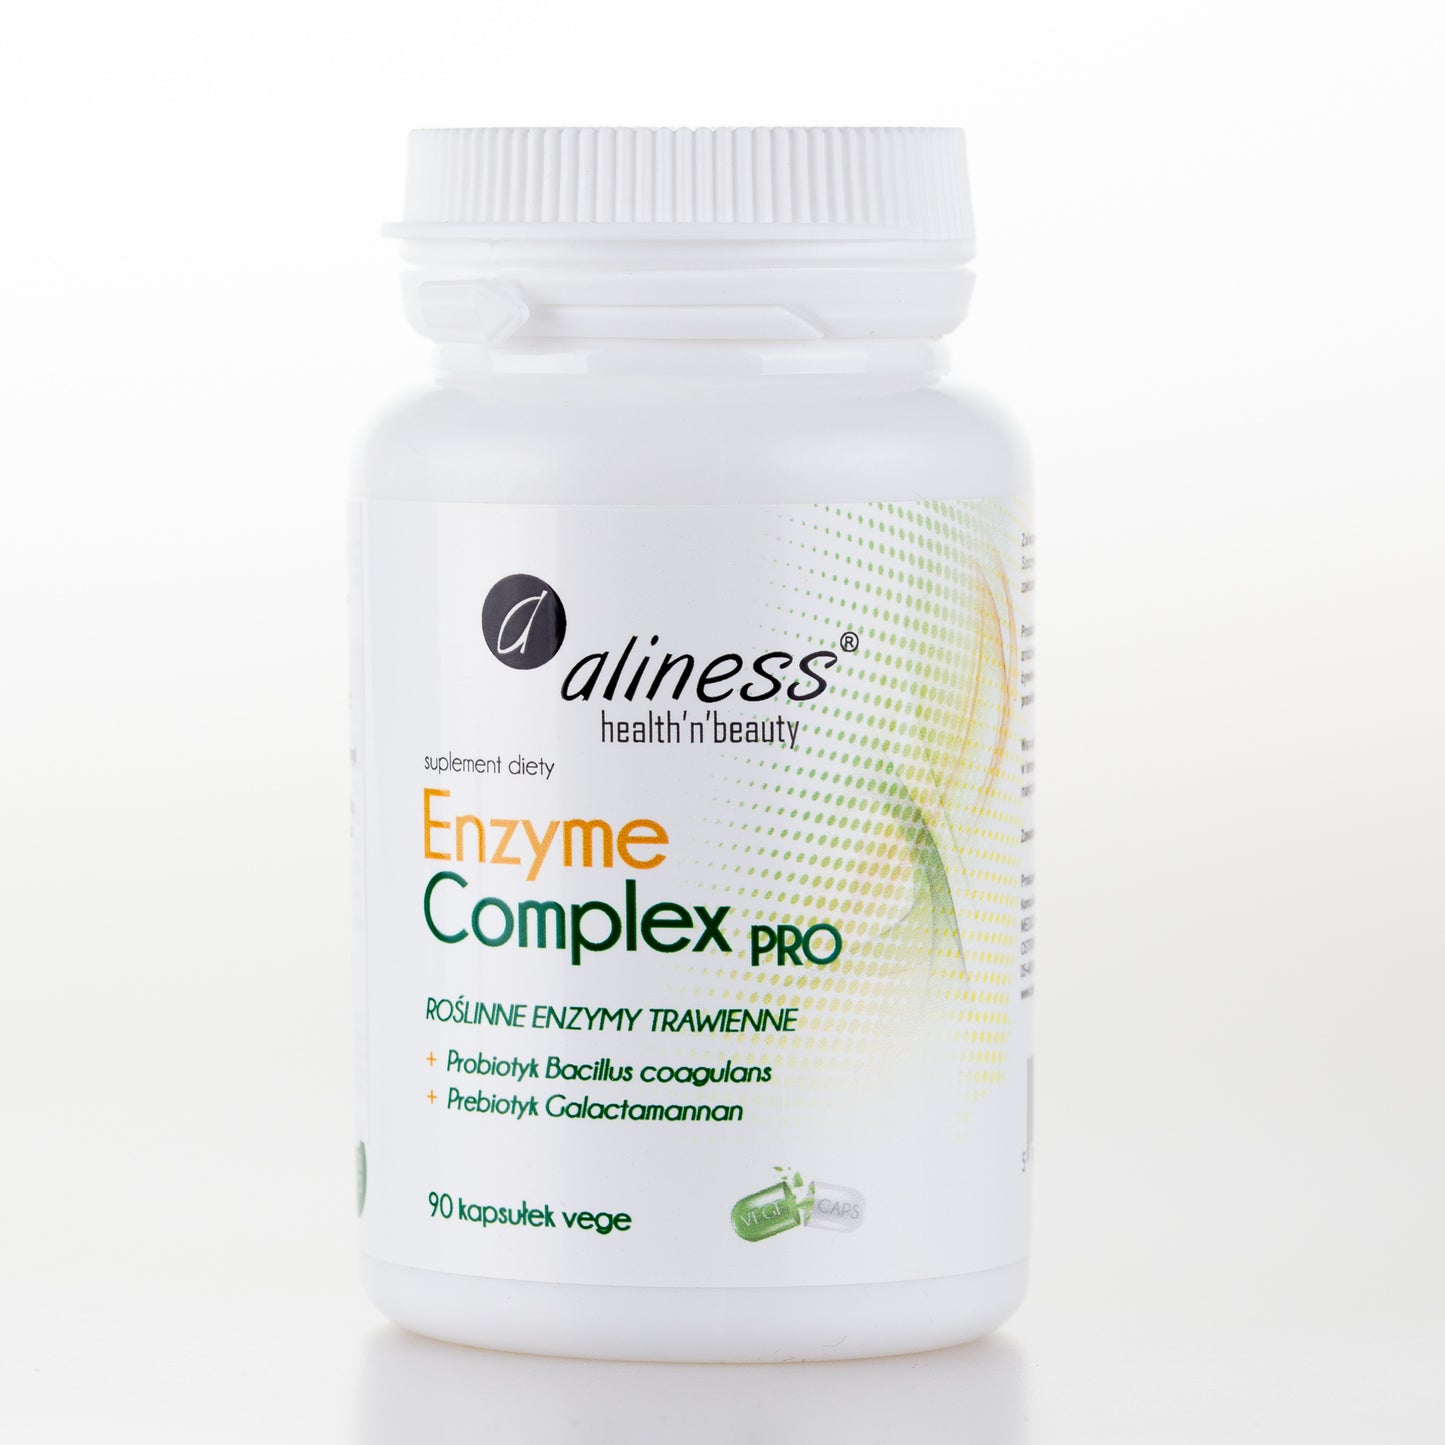 Enzyme Complex PRO, Aliness 90 Vegan capsules, Digezyme, LactoWise